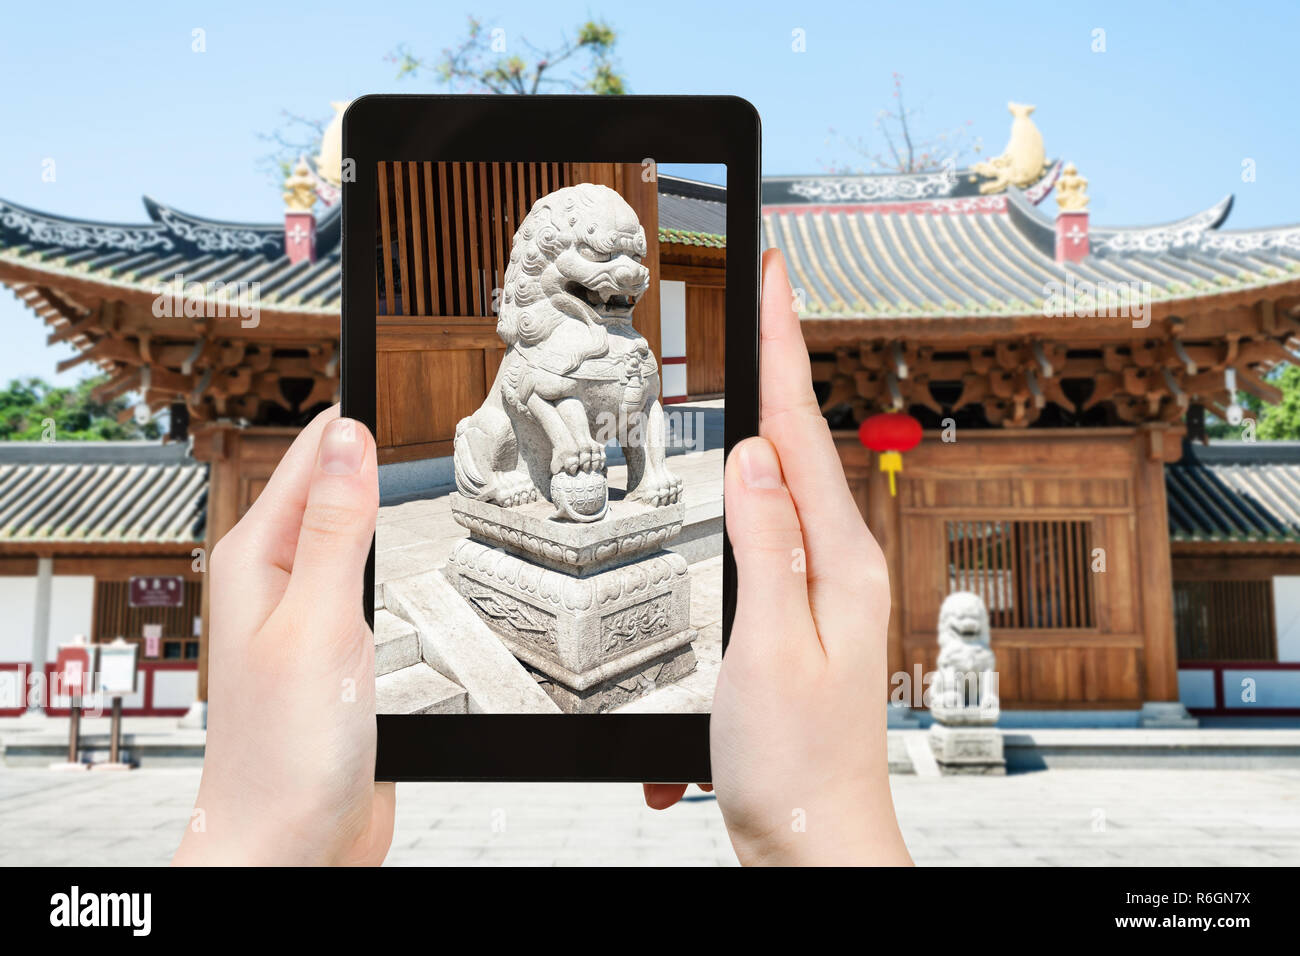 tourist photographs lion statue near temple Stock Photo